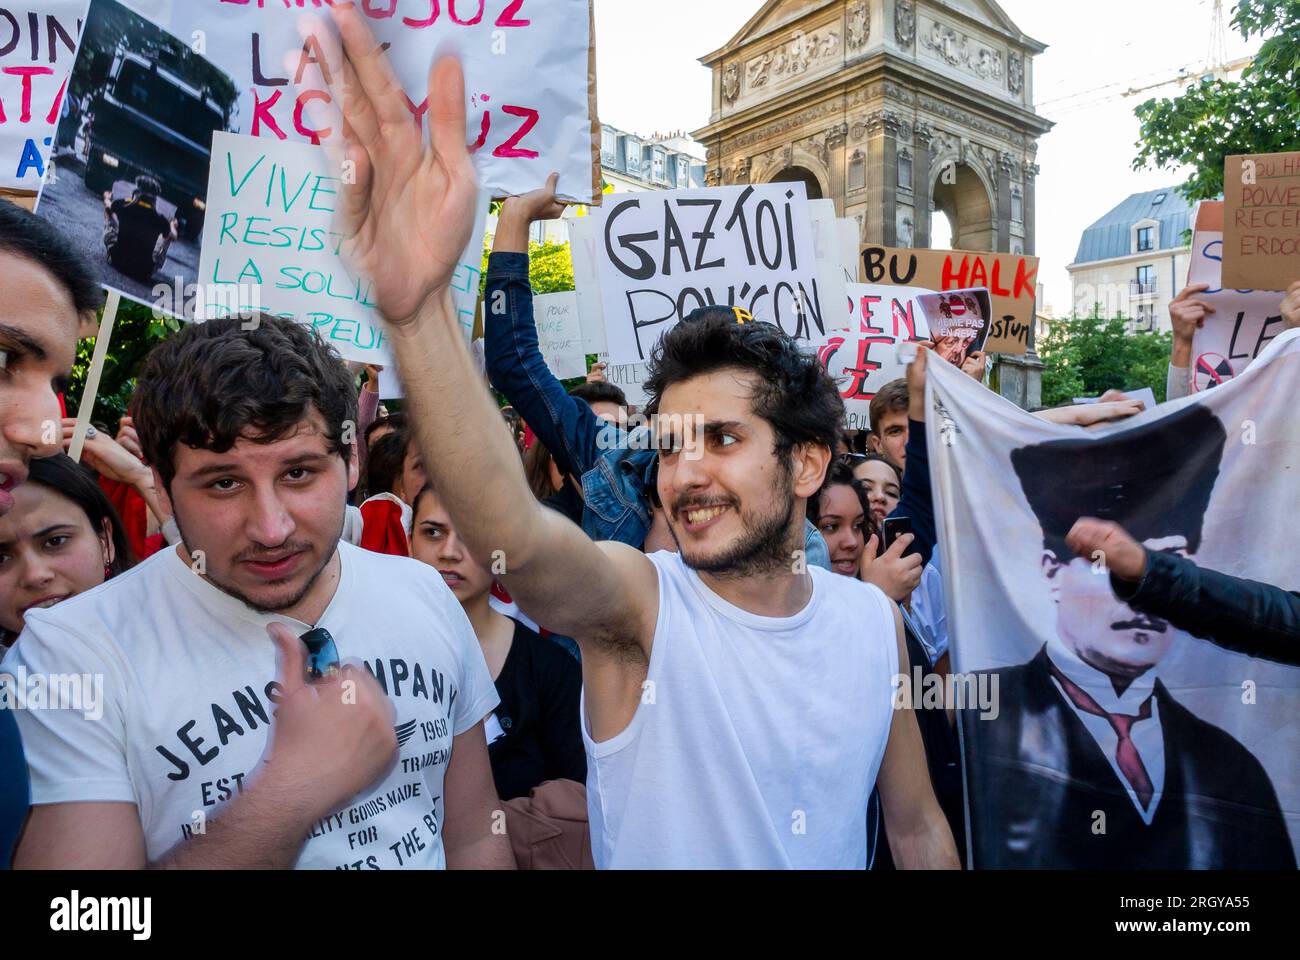 Paris, France, grande foule de gens, manifestant dans la rue, manifestation contre Erdogan, président de la Turquie, par la communauté turque à Paris, tenant des panneaux de protestation, politique internationale Banque D'Images